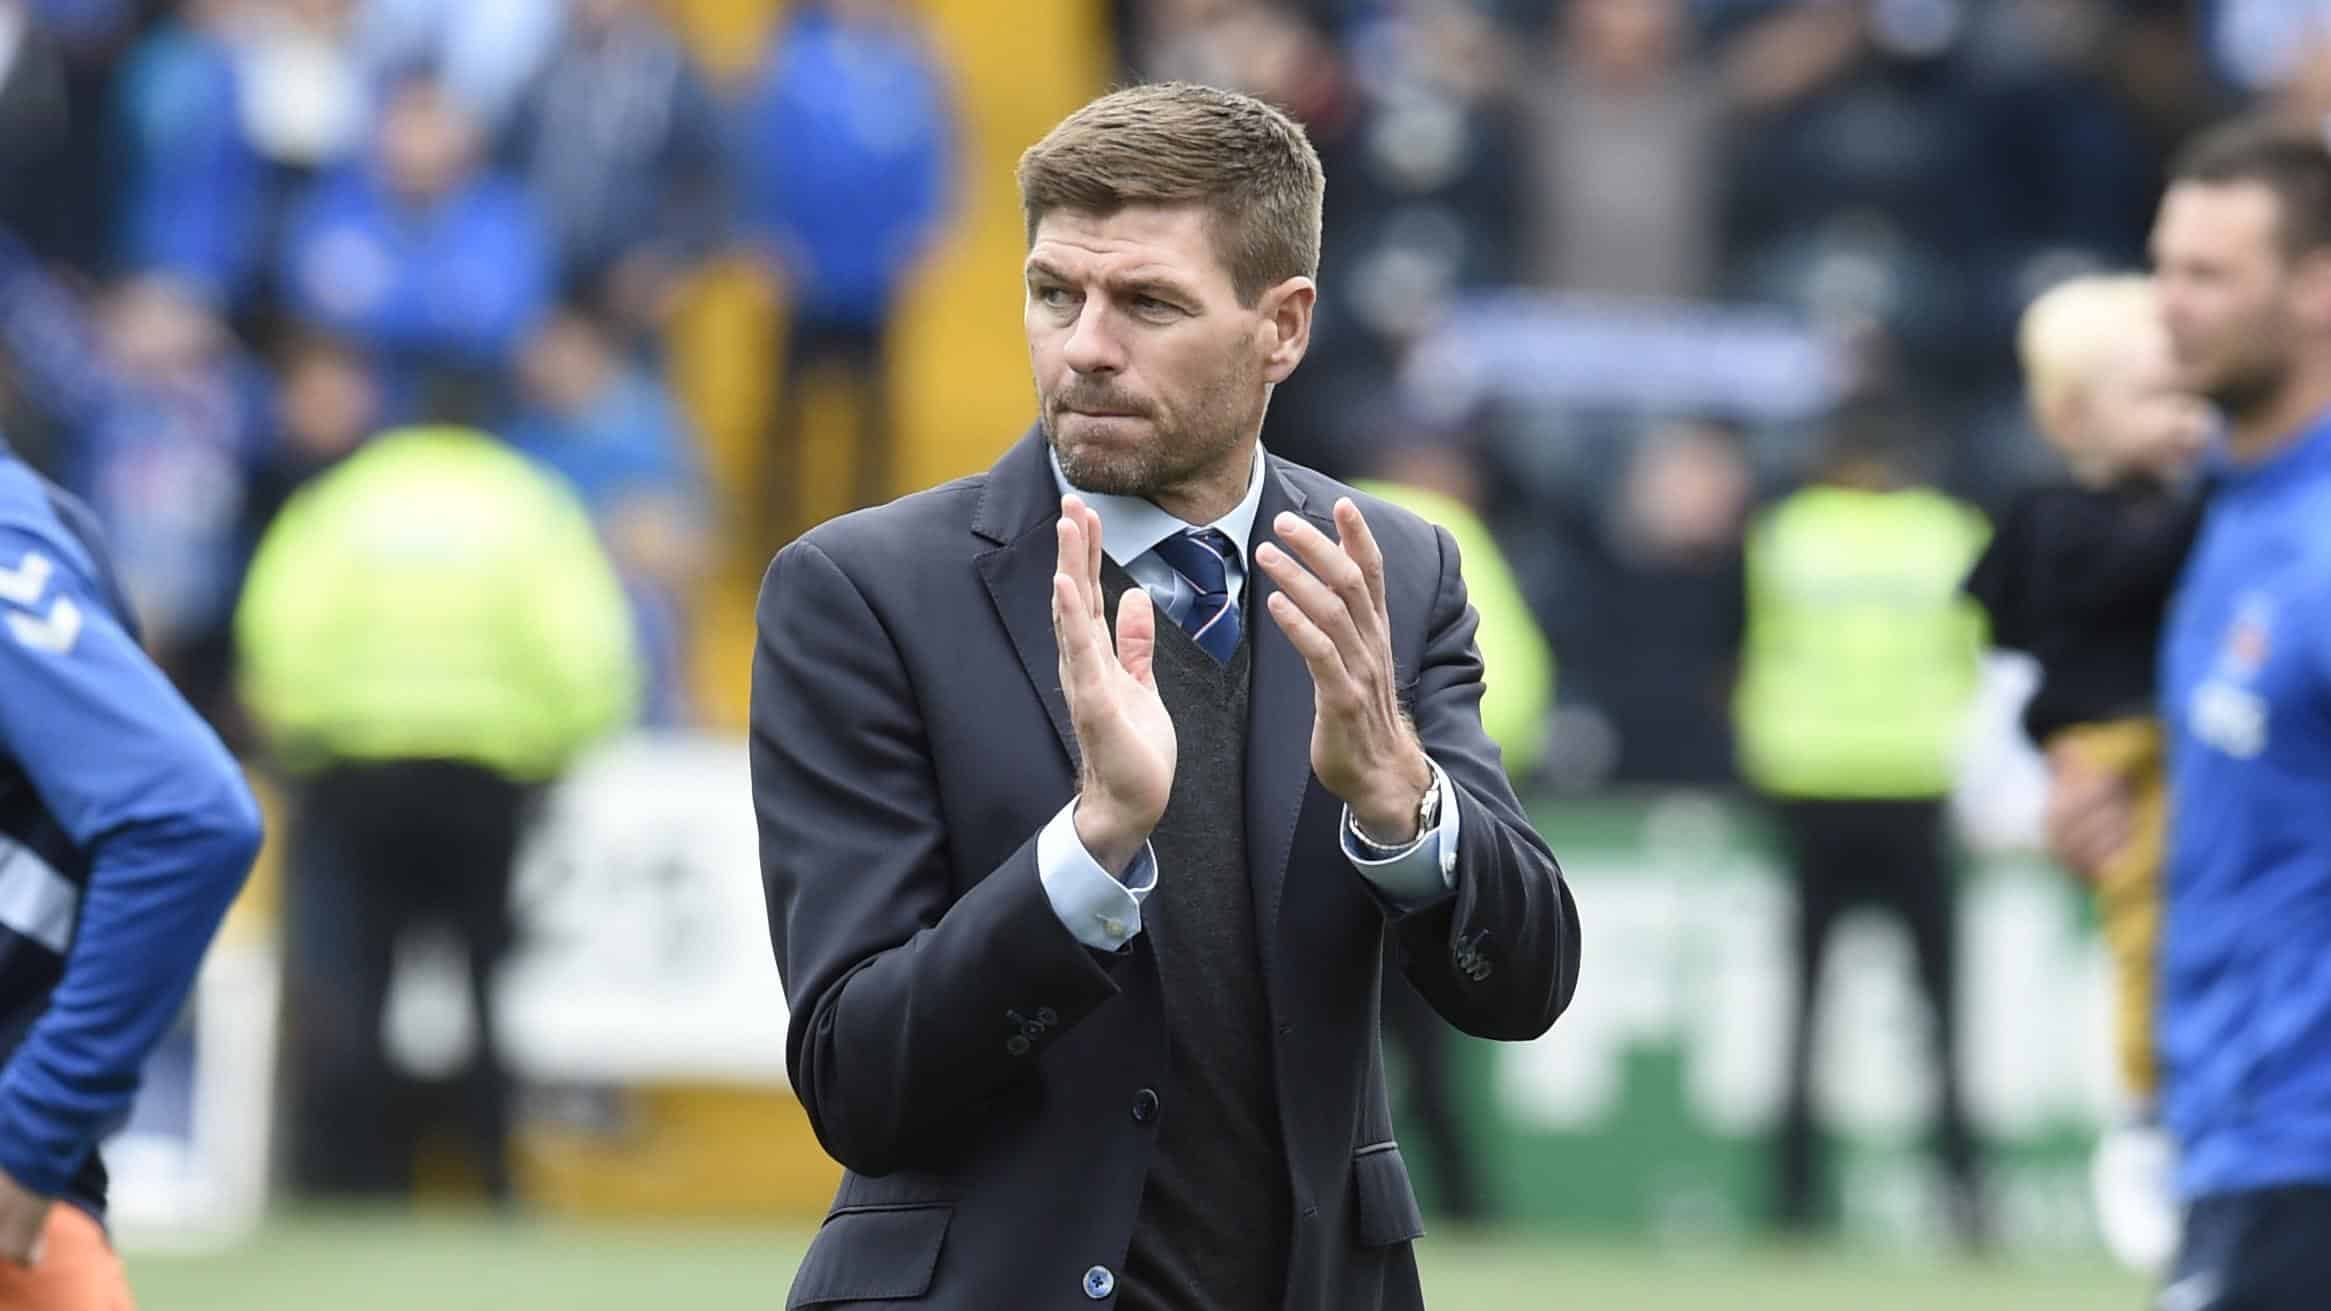 Glasgow Rangers midfielder joins Portsmouth on season-long loan